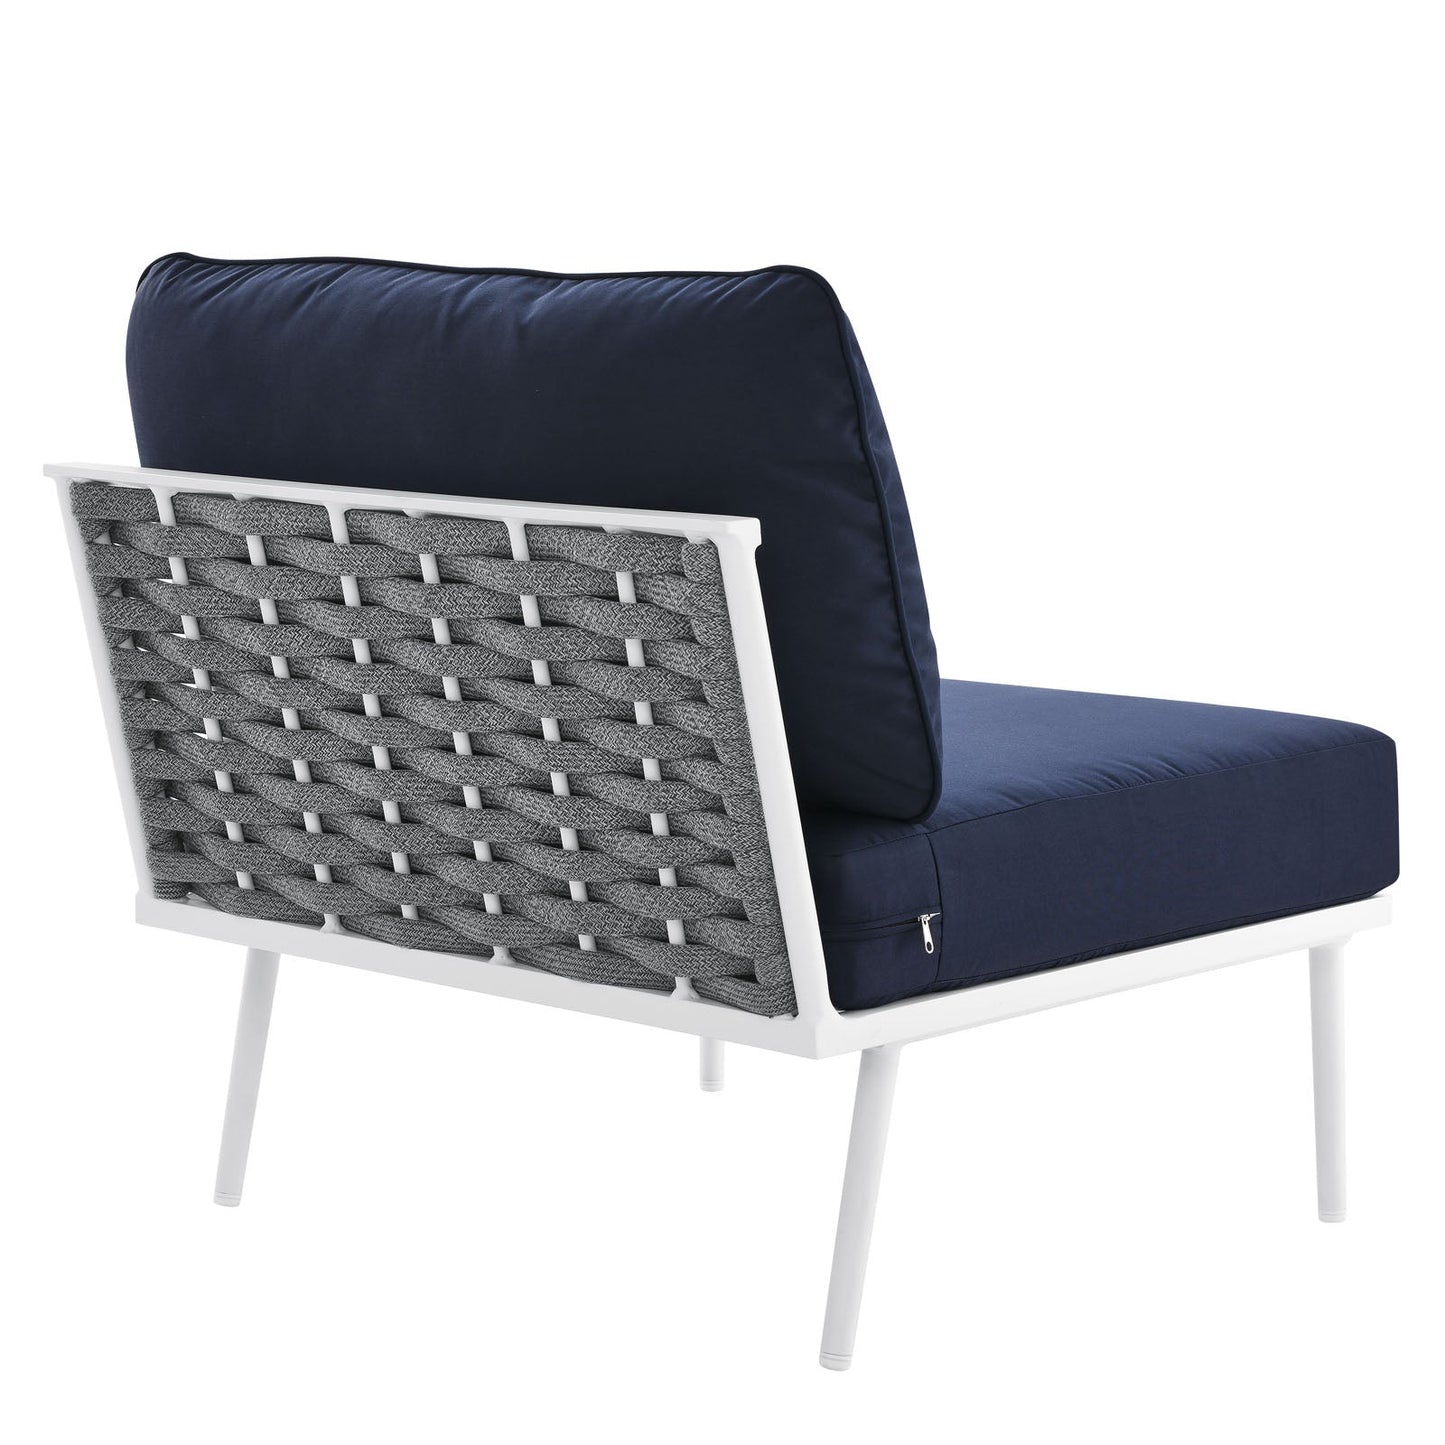 Hanna Outdoor Patio Aluminum Armless Chair